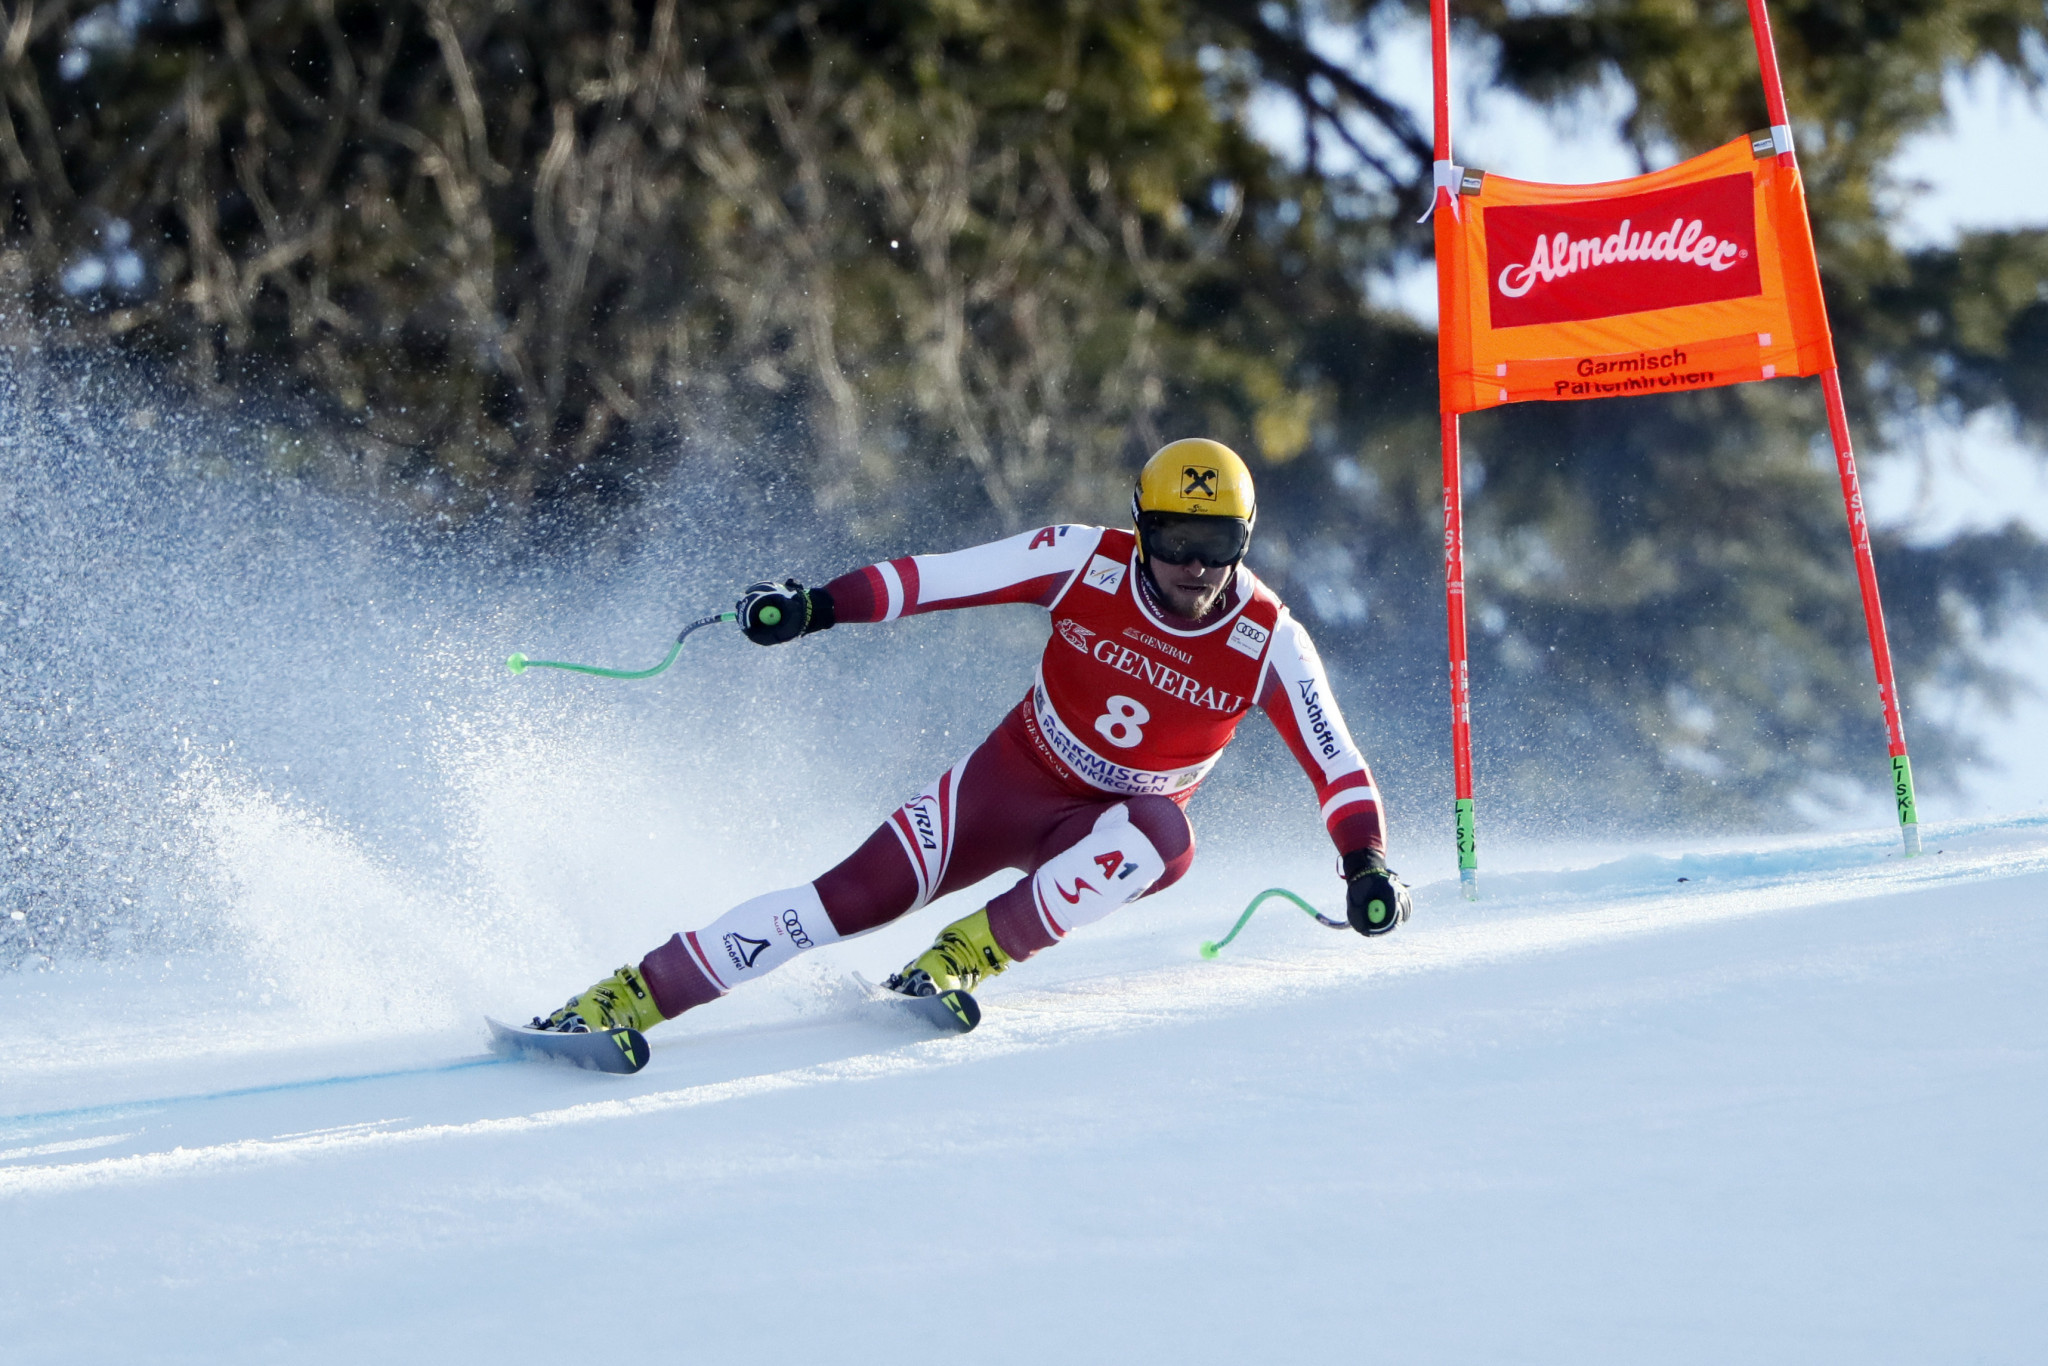 Garmisch-Partenkirchen offers final preparation ahead of FIS Alpine World Ski Championships